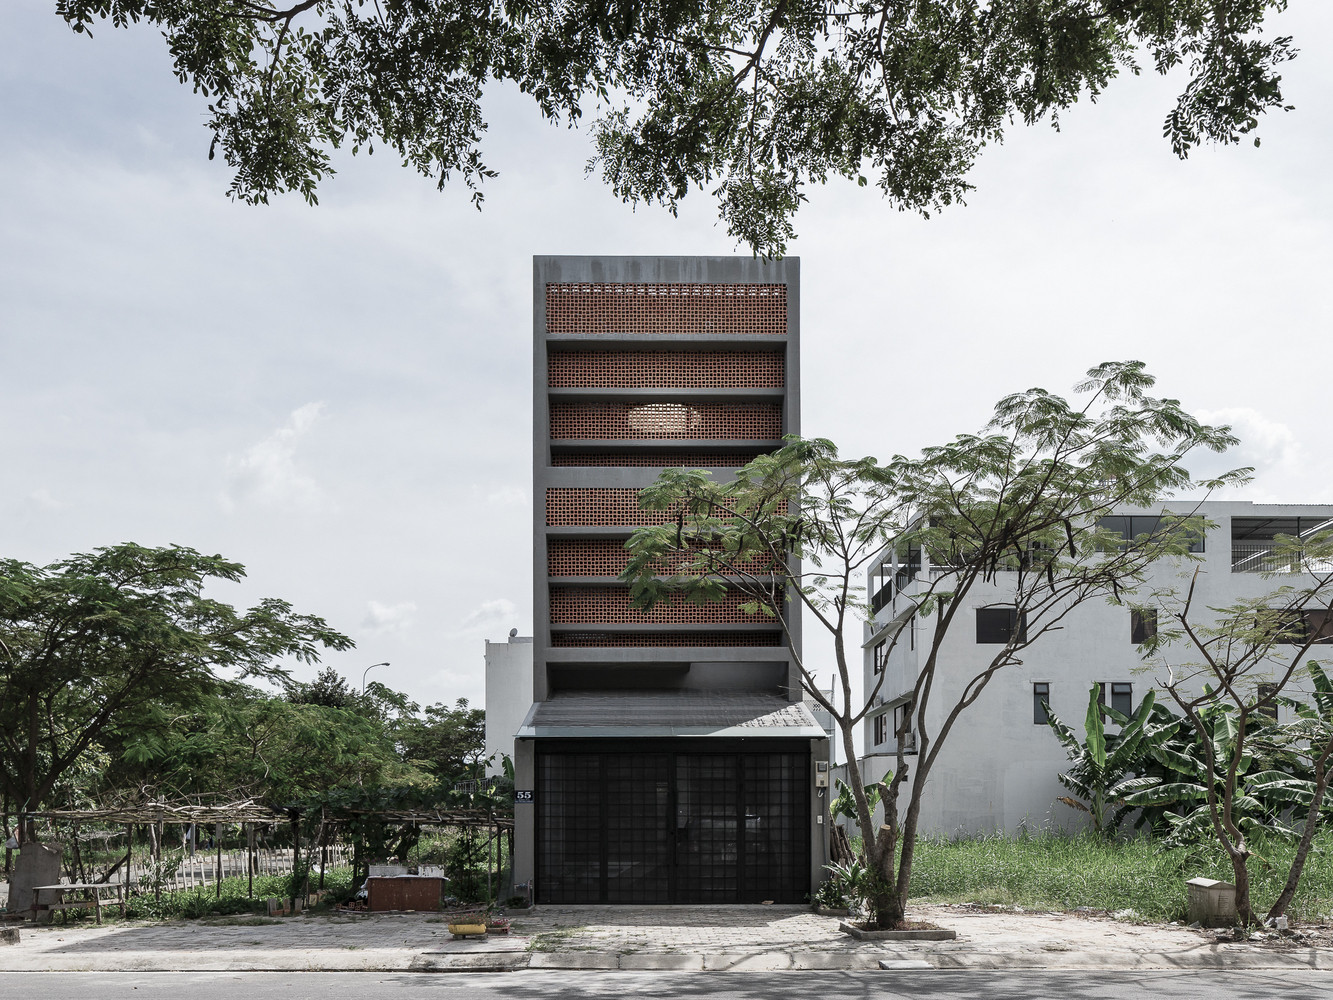 Ấn tượng với ngôi nhà được bao quanh bởi lưới chống côn trùng ở ngoại ô Sài Gòn